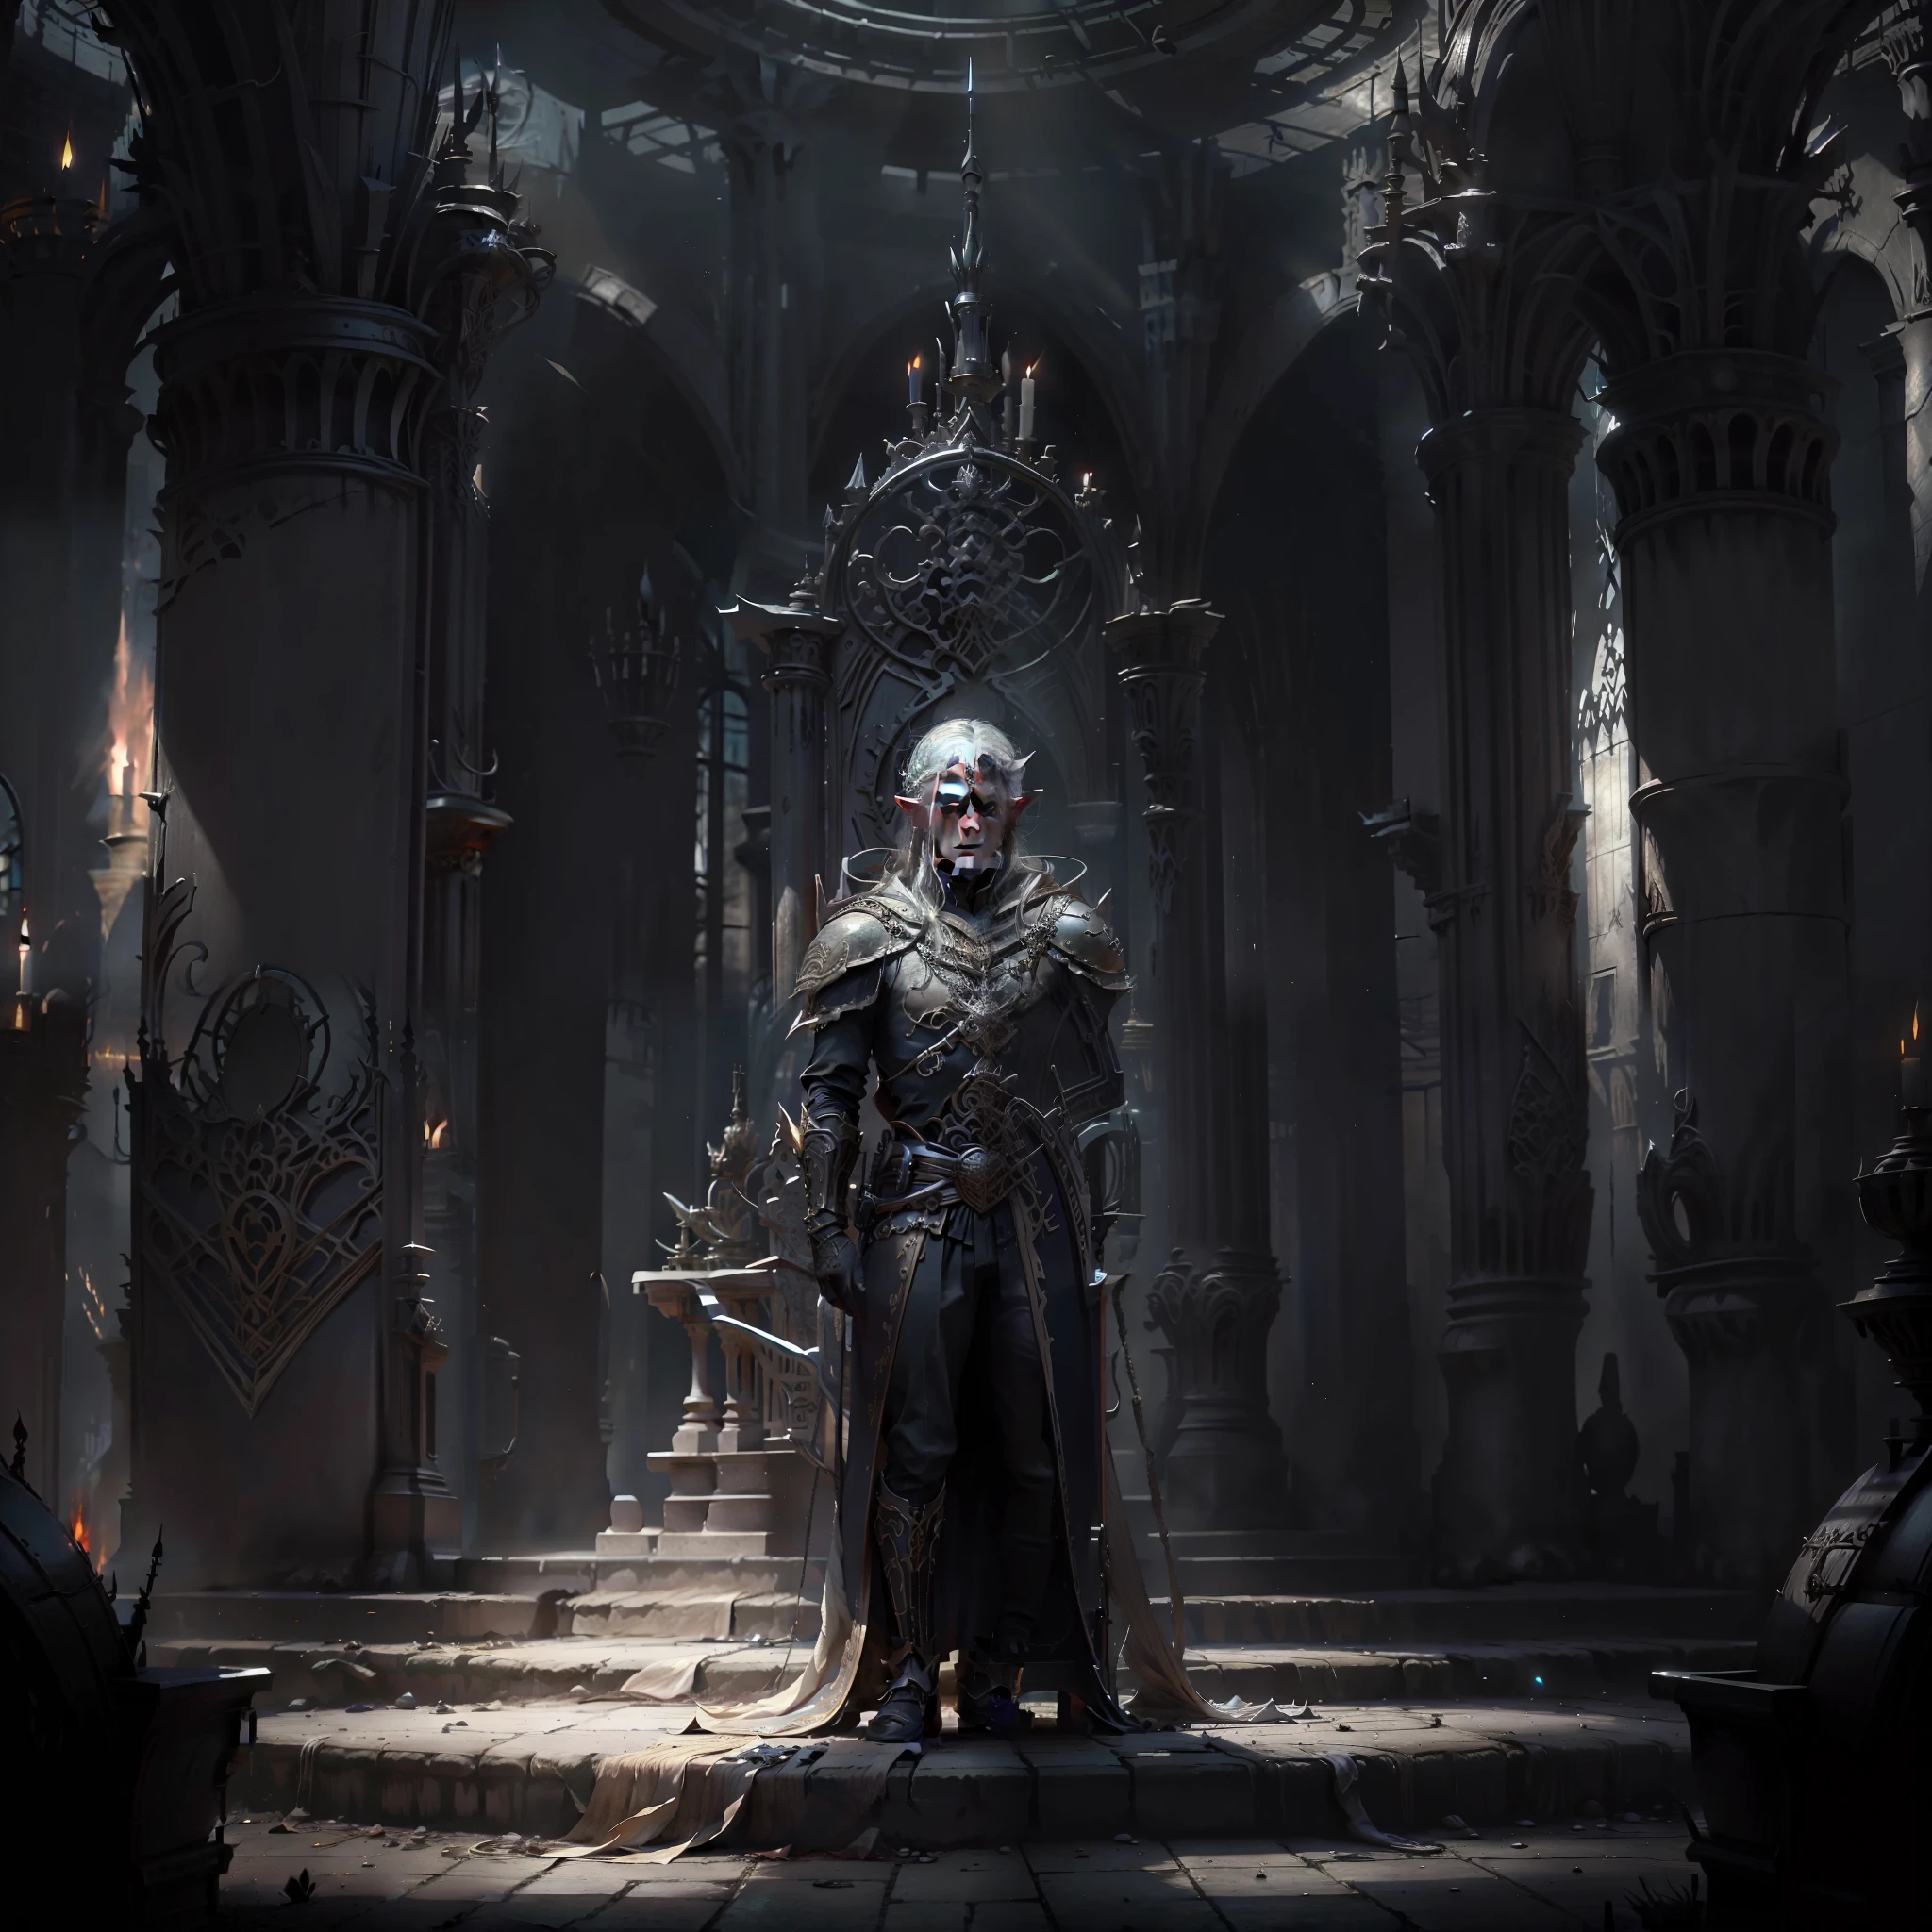 Молодой король эльфов стоит посреди тронного зала, темный свет, тени